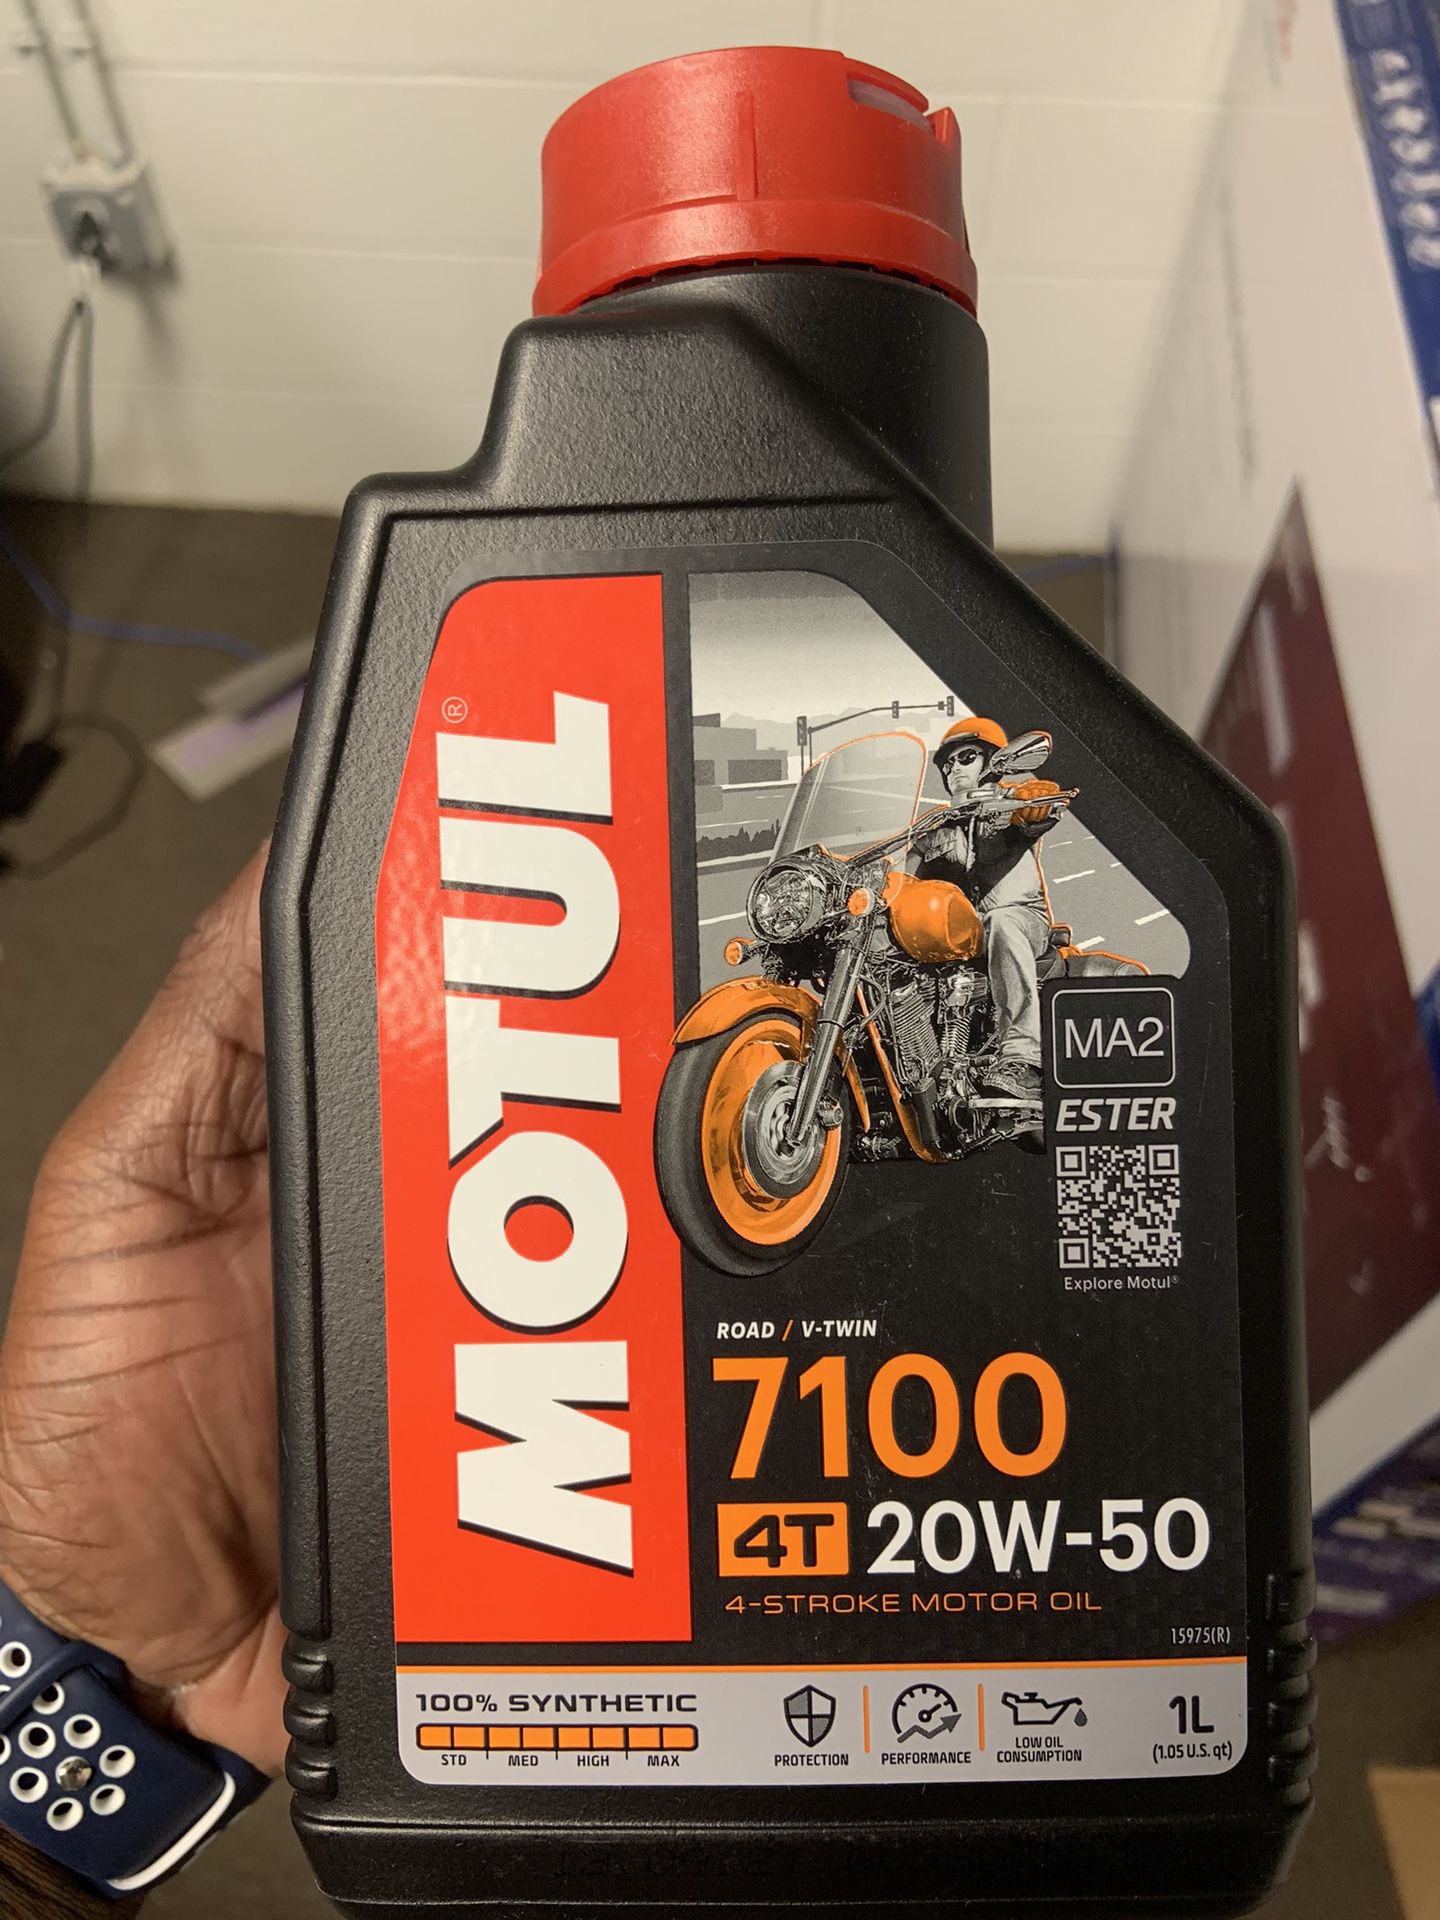 Motul 7100 4T 20w - 50 Motor Oil 